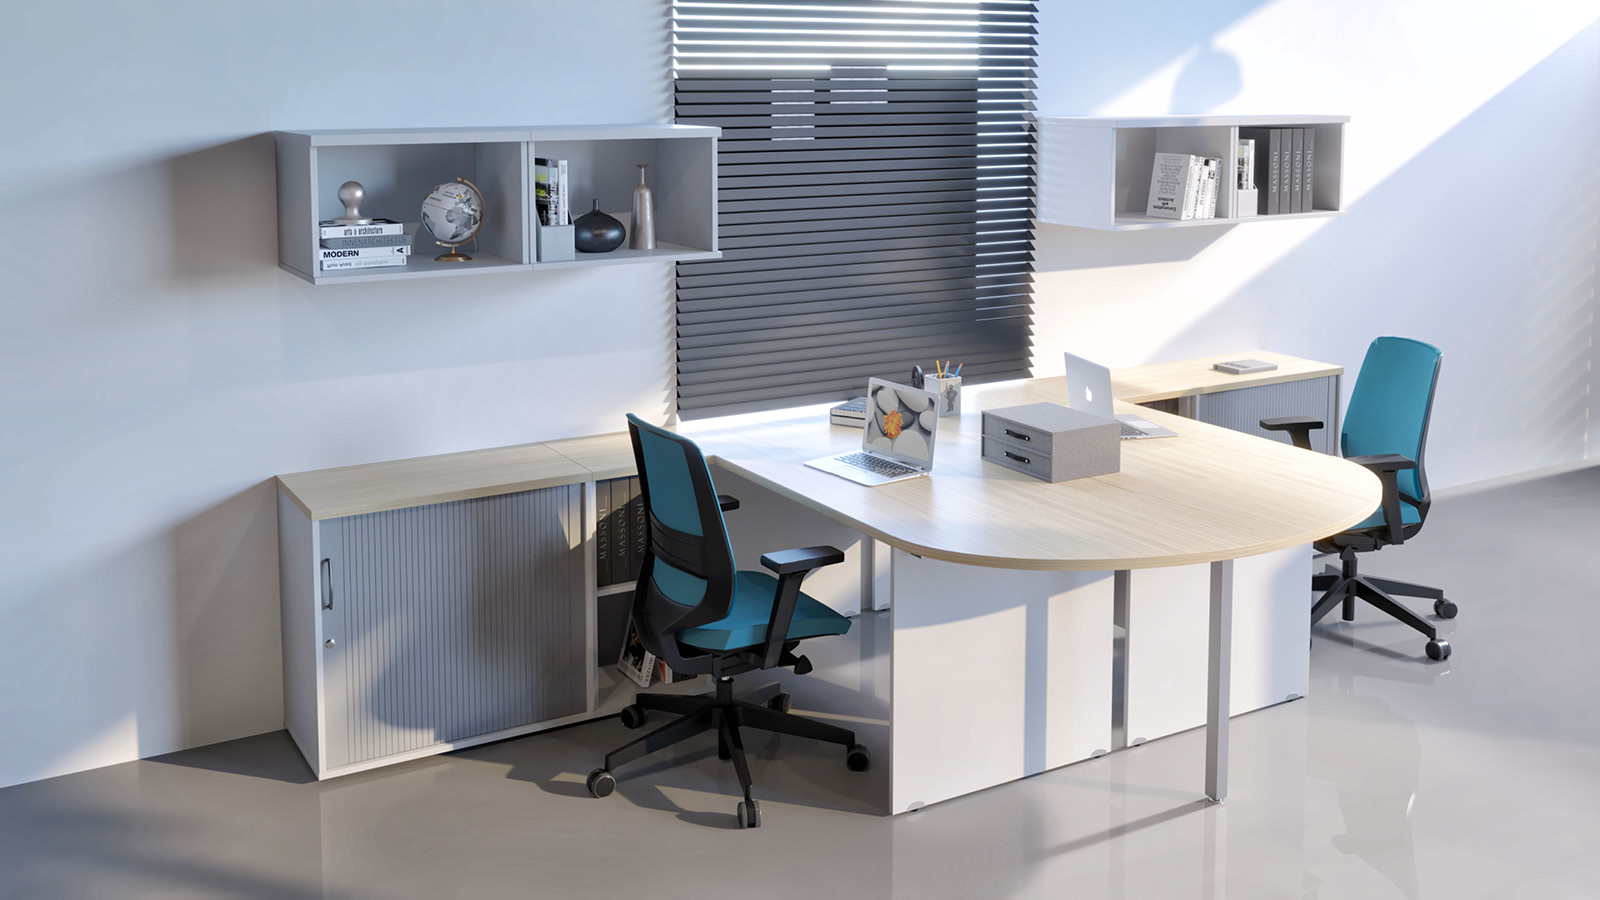 Stanowisko pracy zespołowej - biurko z przystawką (kolor: klon/biały), szafa żaluzjowa, szafki wiszące, krzesła obrotowe.